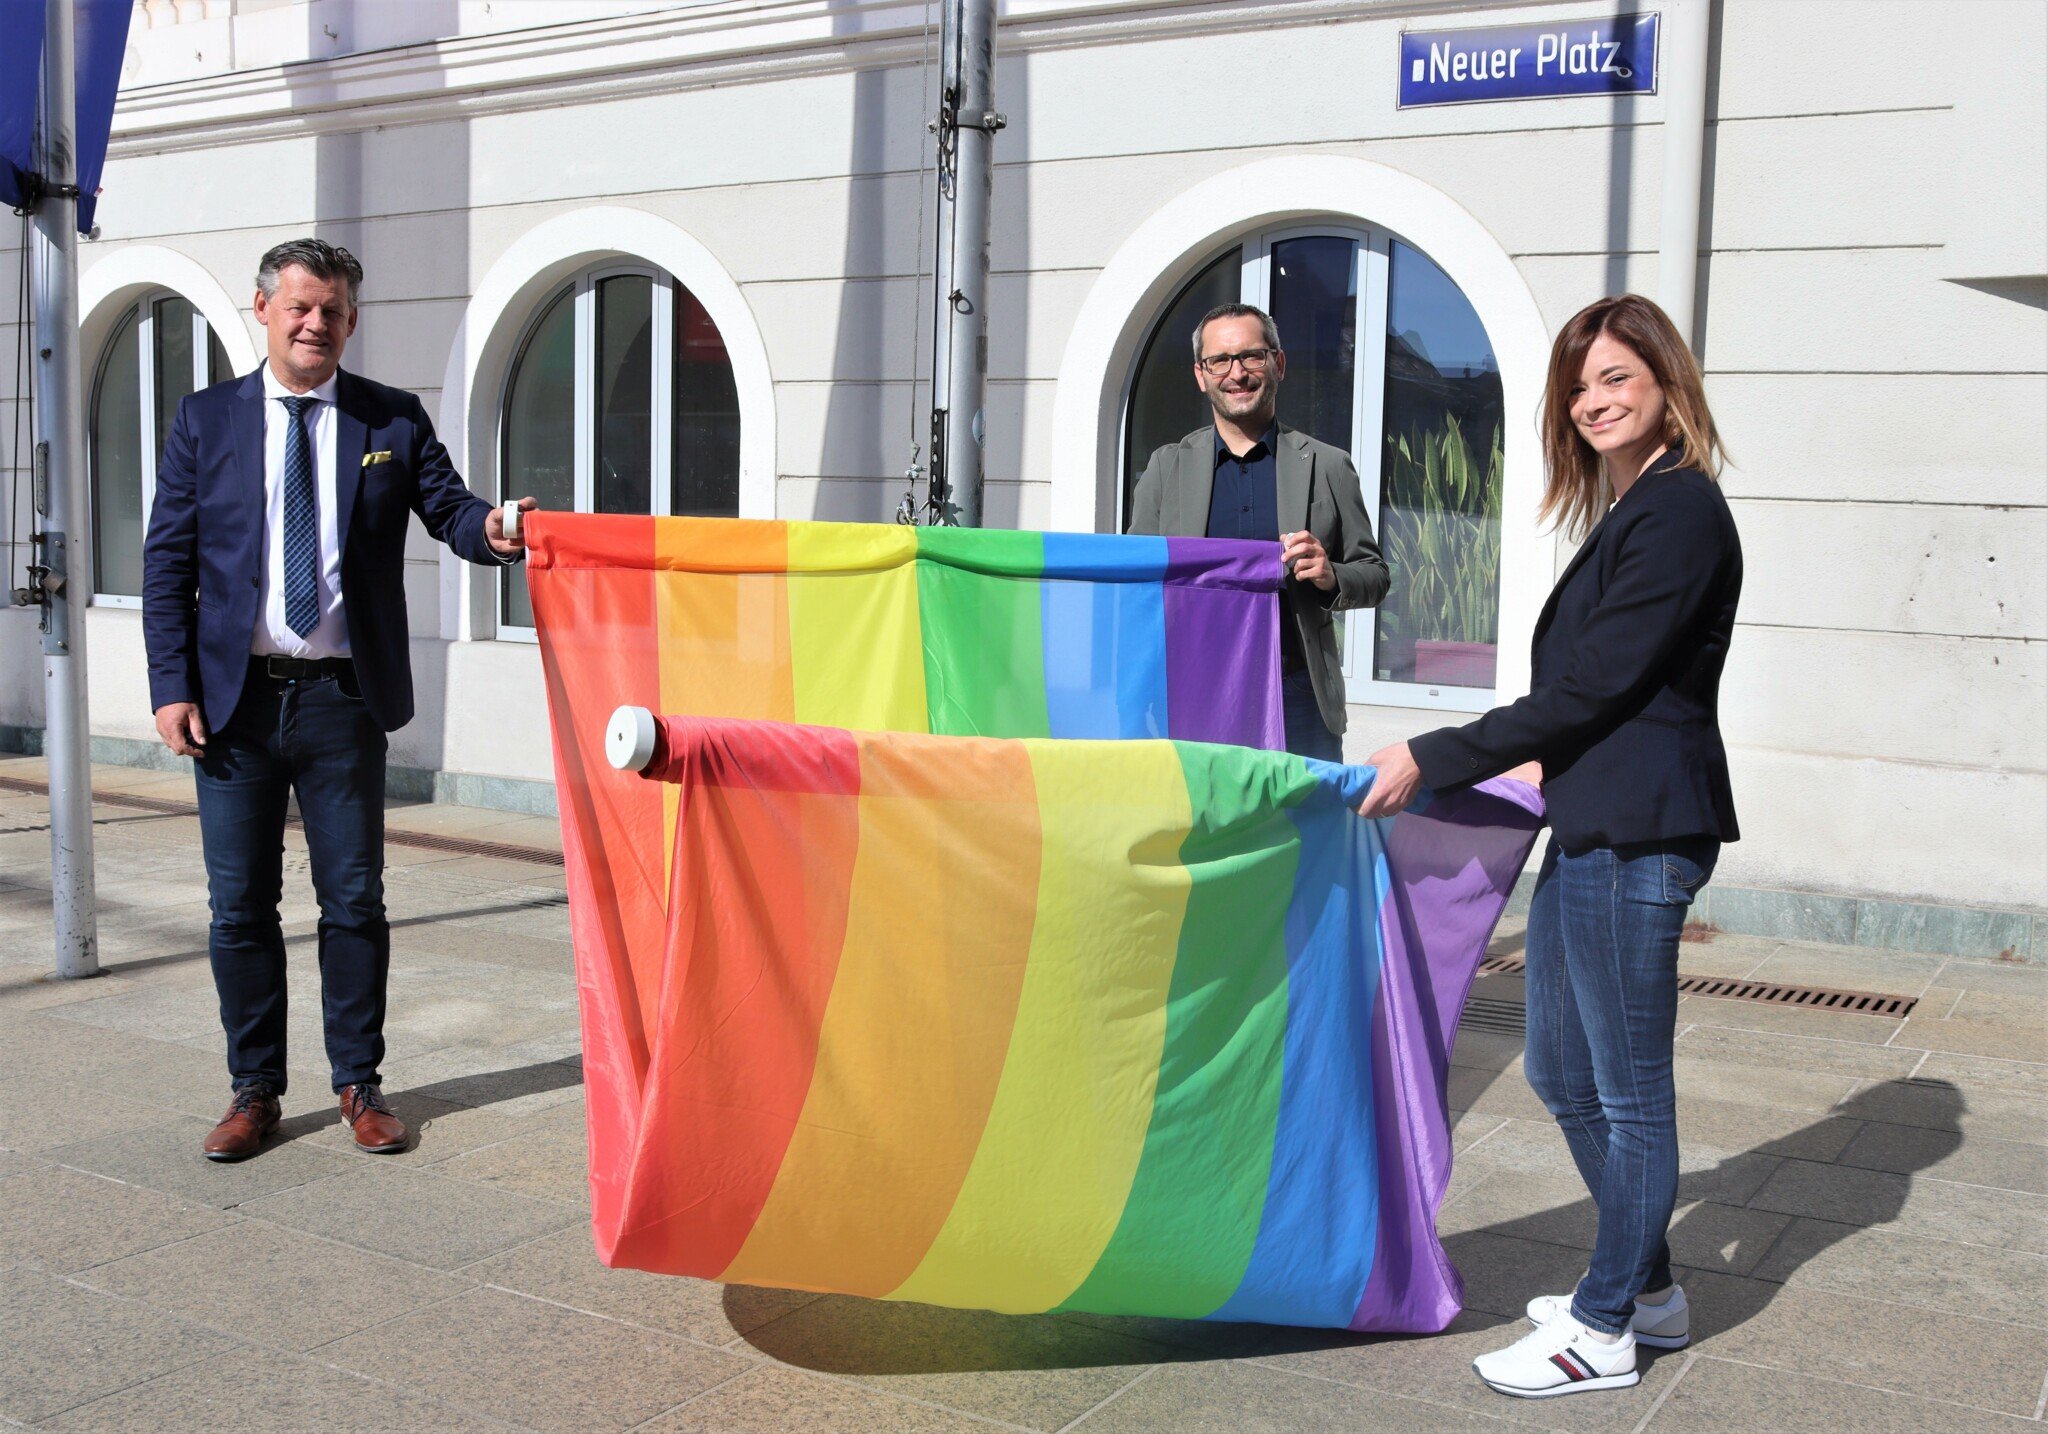 Bürgermeister Christian Scheider hisst gemeinsam mit Stadträtin Mag.a Corinna
Smrecnik und Stadtrat Mag. Franz Petritz die Regenbogenfahne vor dem
Rathaus.